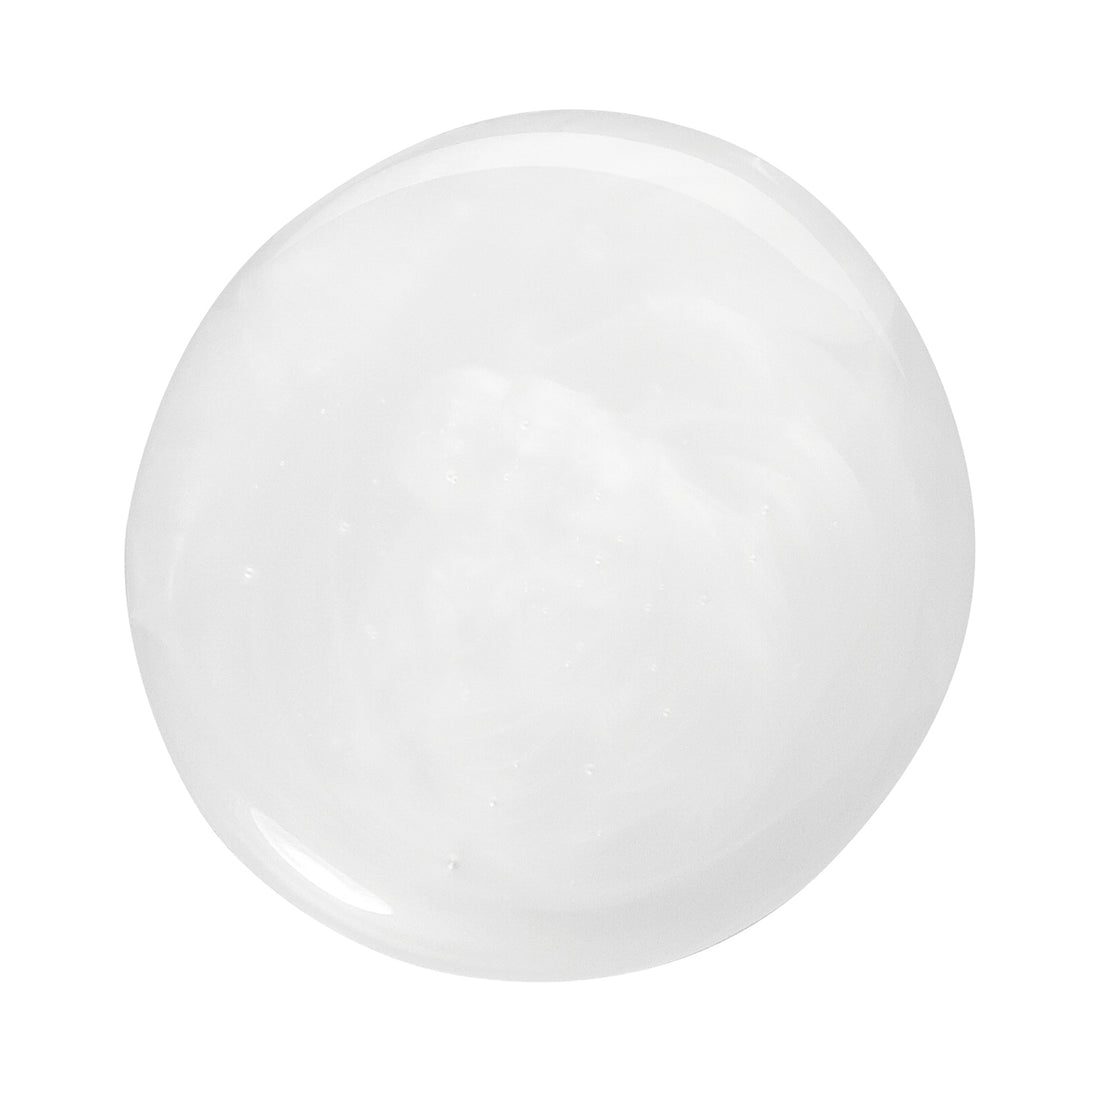 A drop of translucent white liquid